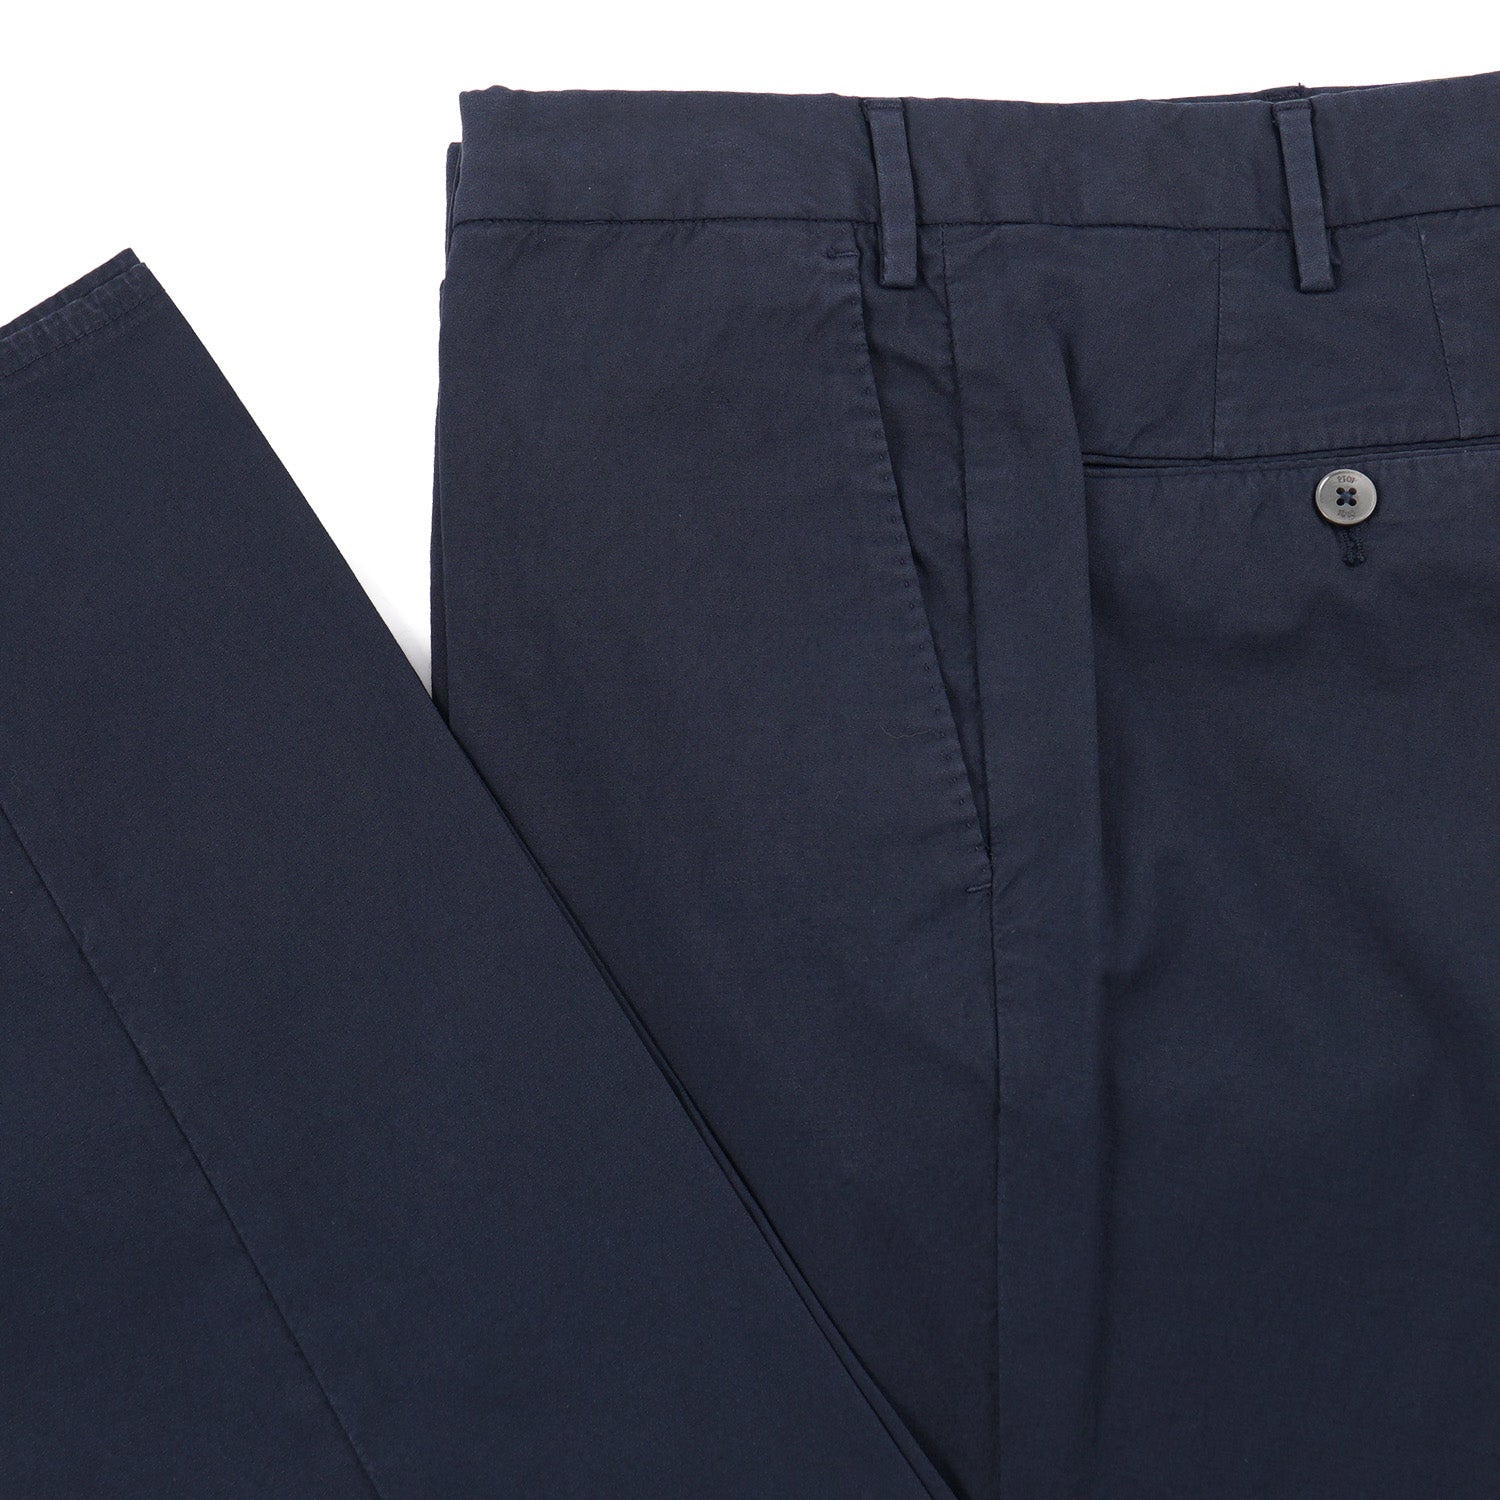 PT01 Slim-Fit Cotton Dress Pants - Top Shelf Apparel